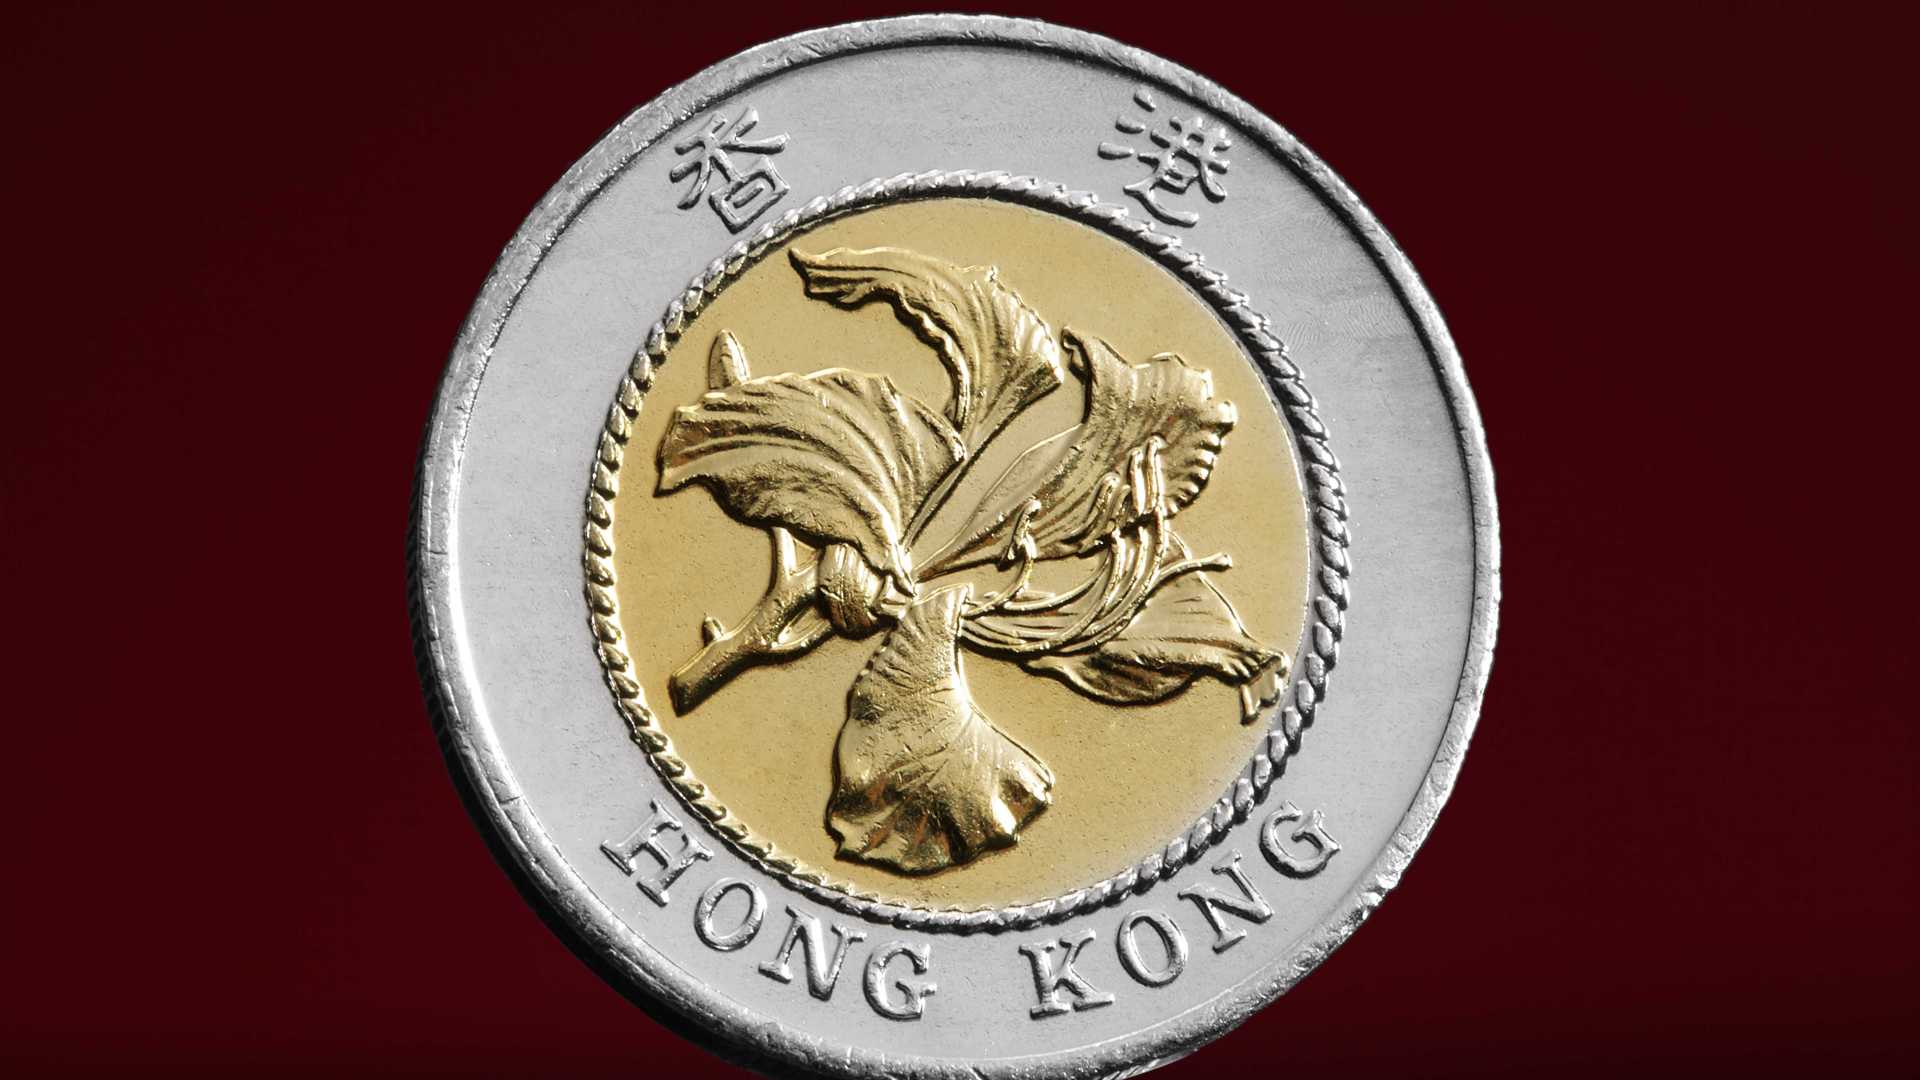 静物摄影香港回归纪念币拍摄案例教程/没见过香港回归纪念币的可以看过来